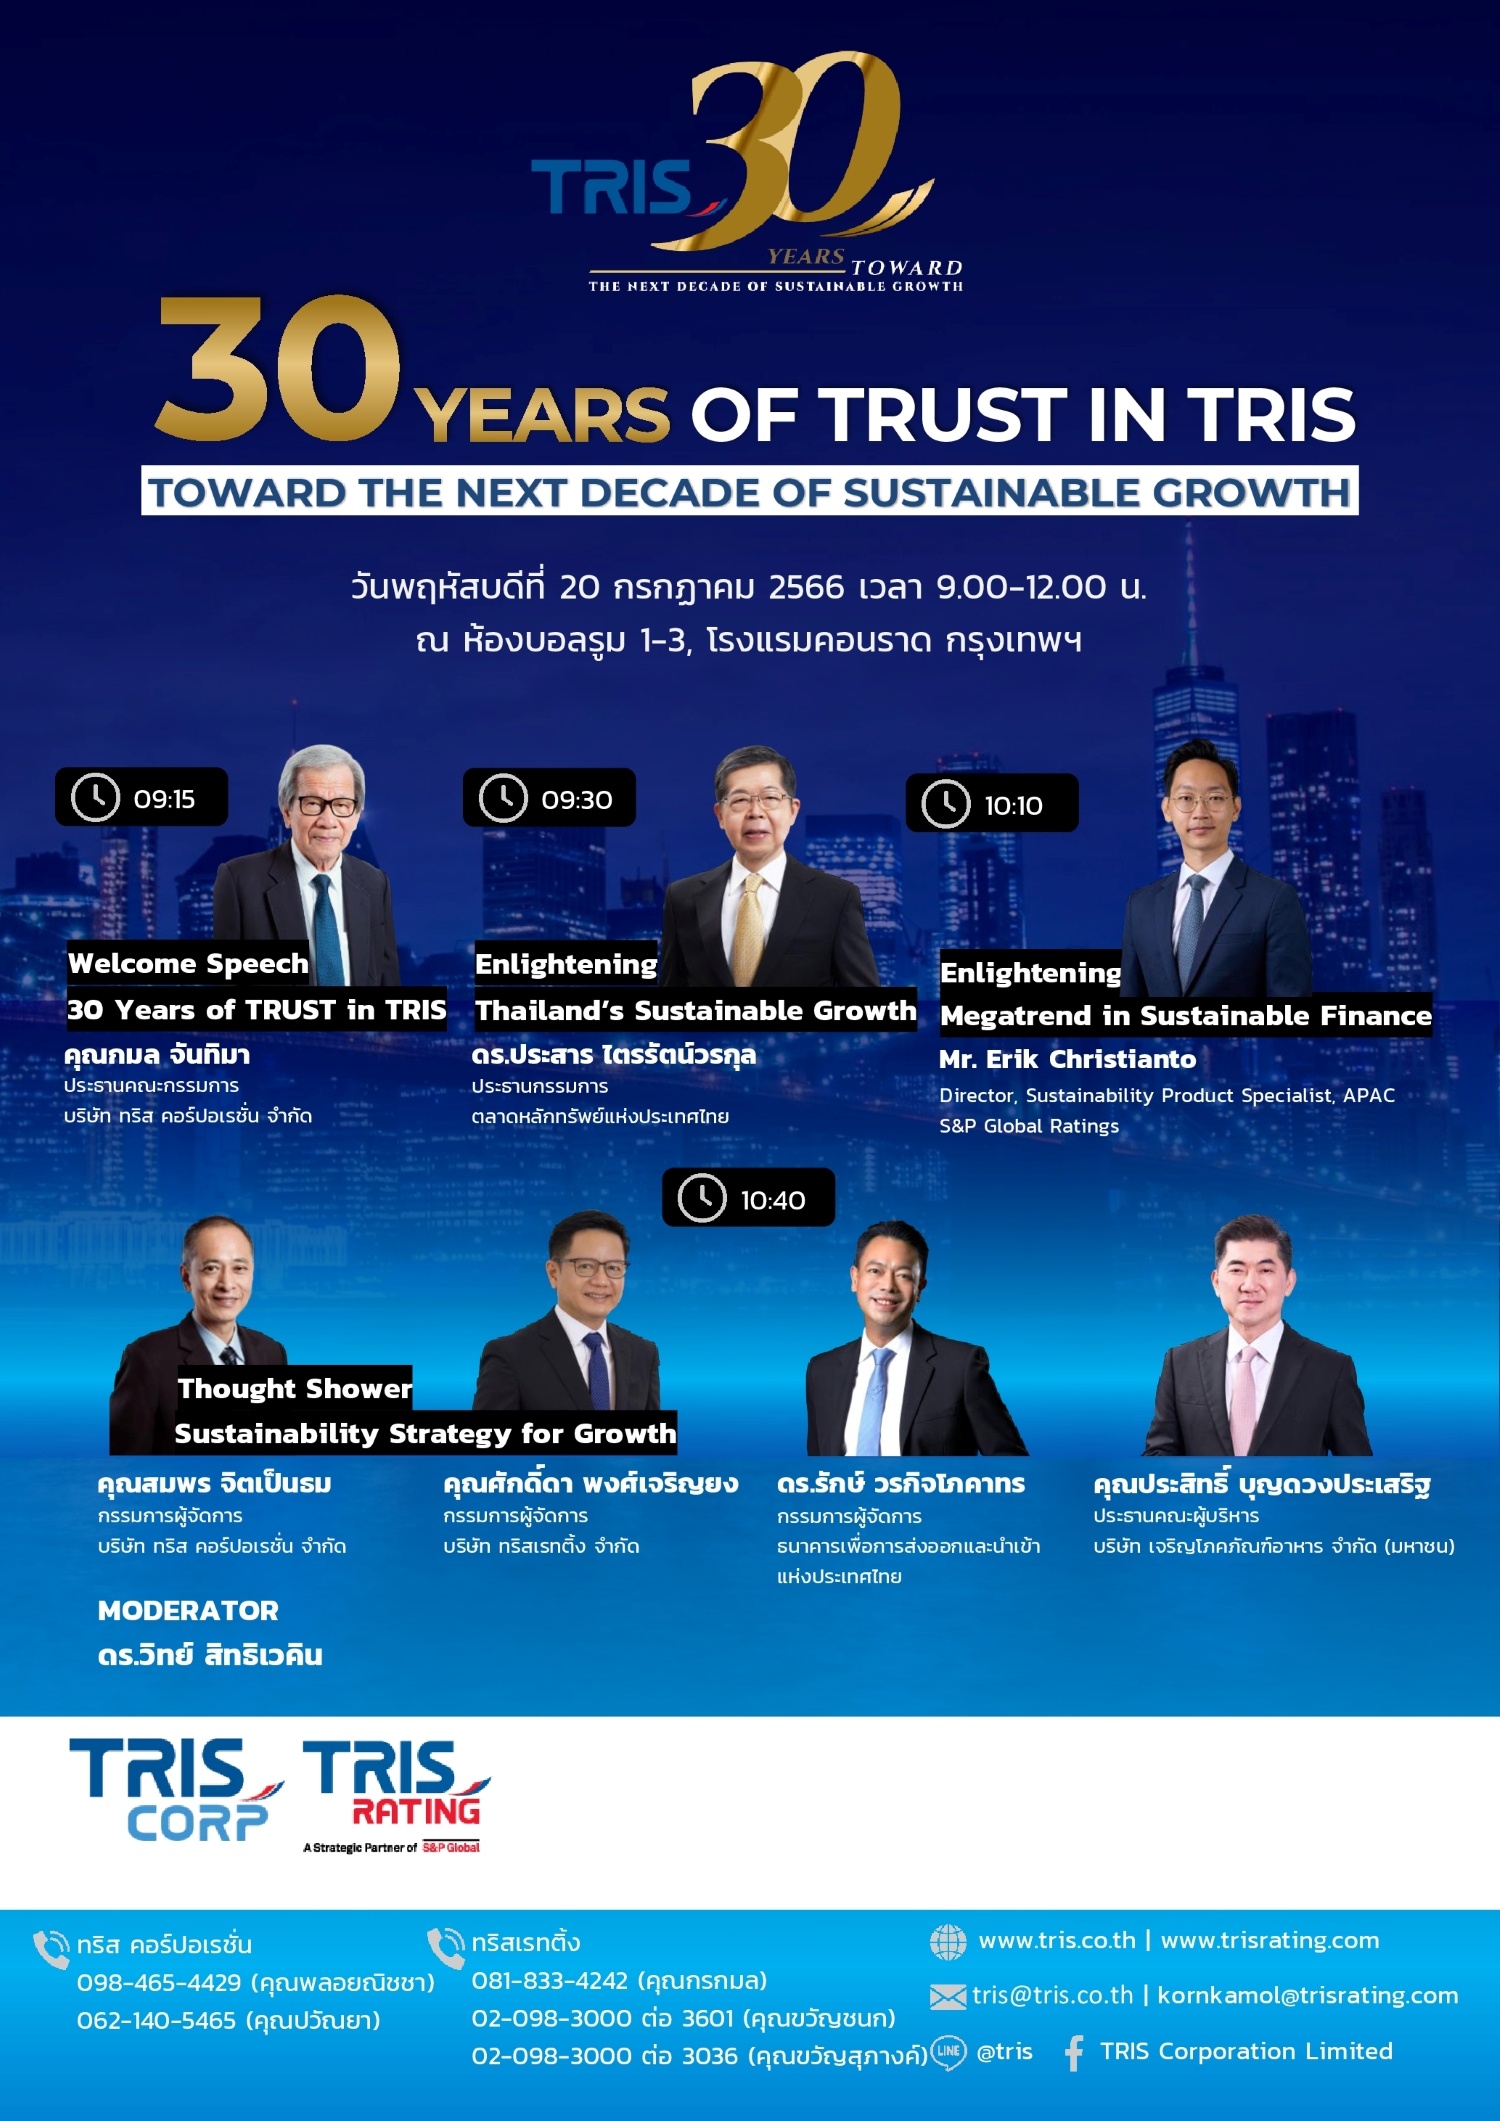 ทริส จัดสัมมนา “30 Years of TRUST in TRIS: Toward the Next Decade of Sustainable Growth”